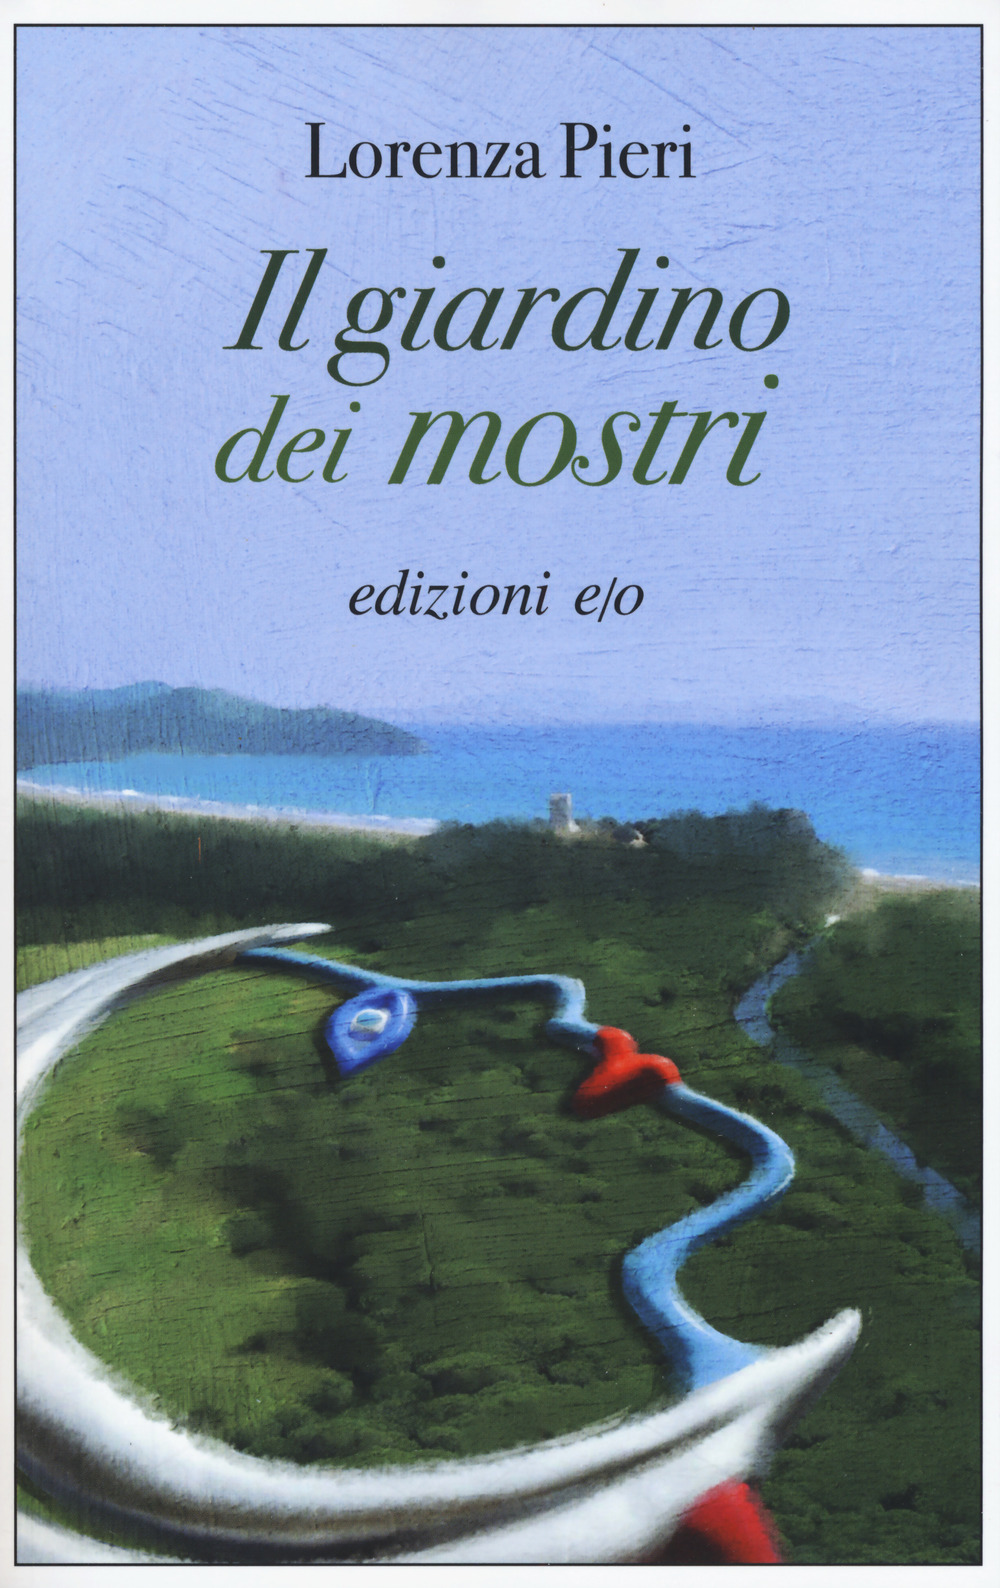 Libri Lorenza Pieri - Il Giardino Dei Mostri NUOVO SIGILLATO, EDIZIONE DEL 03/07/2019 SUBITO DISPONIBILE